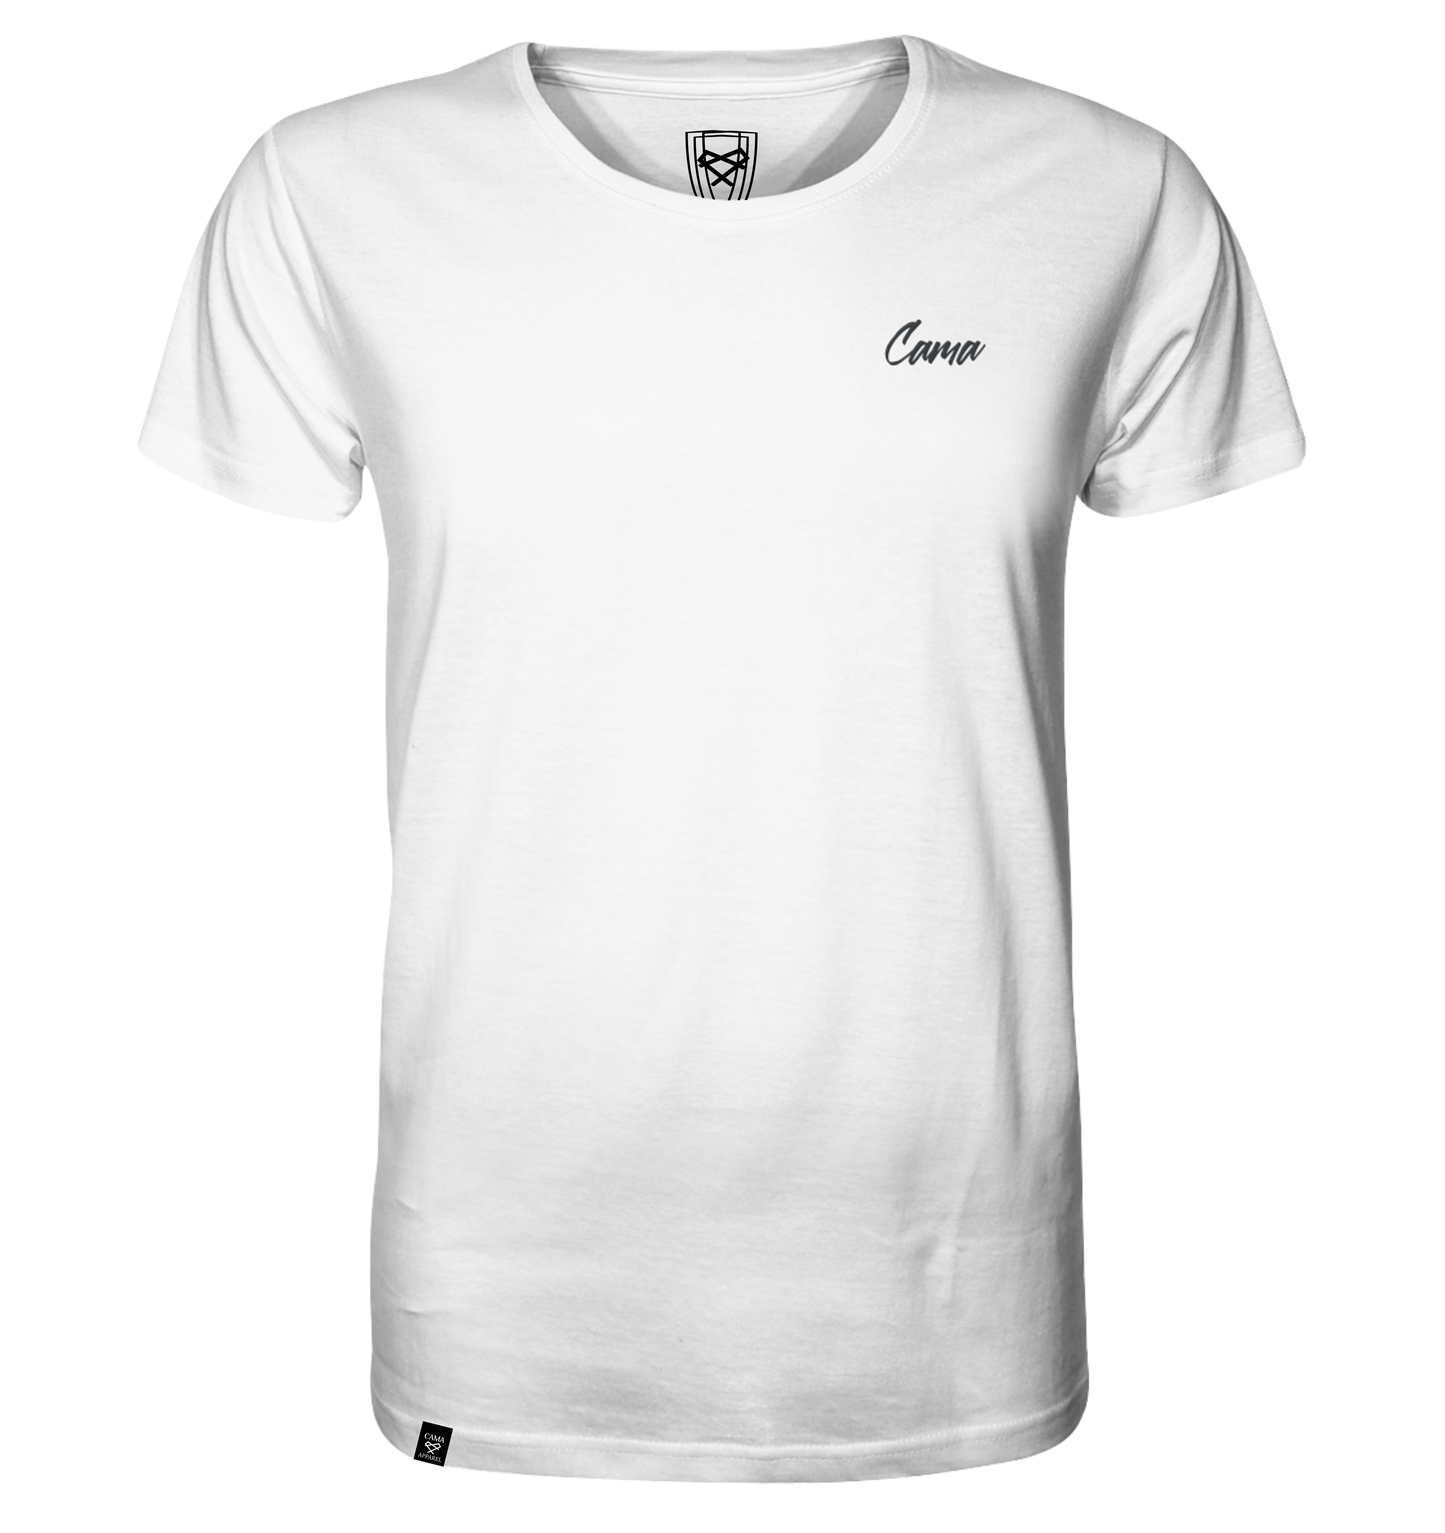 Basic Shirt - White